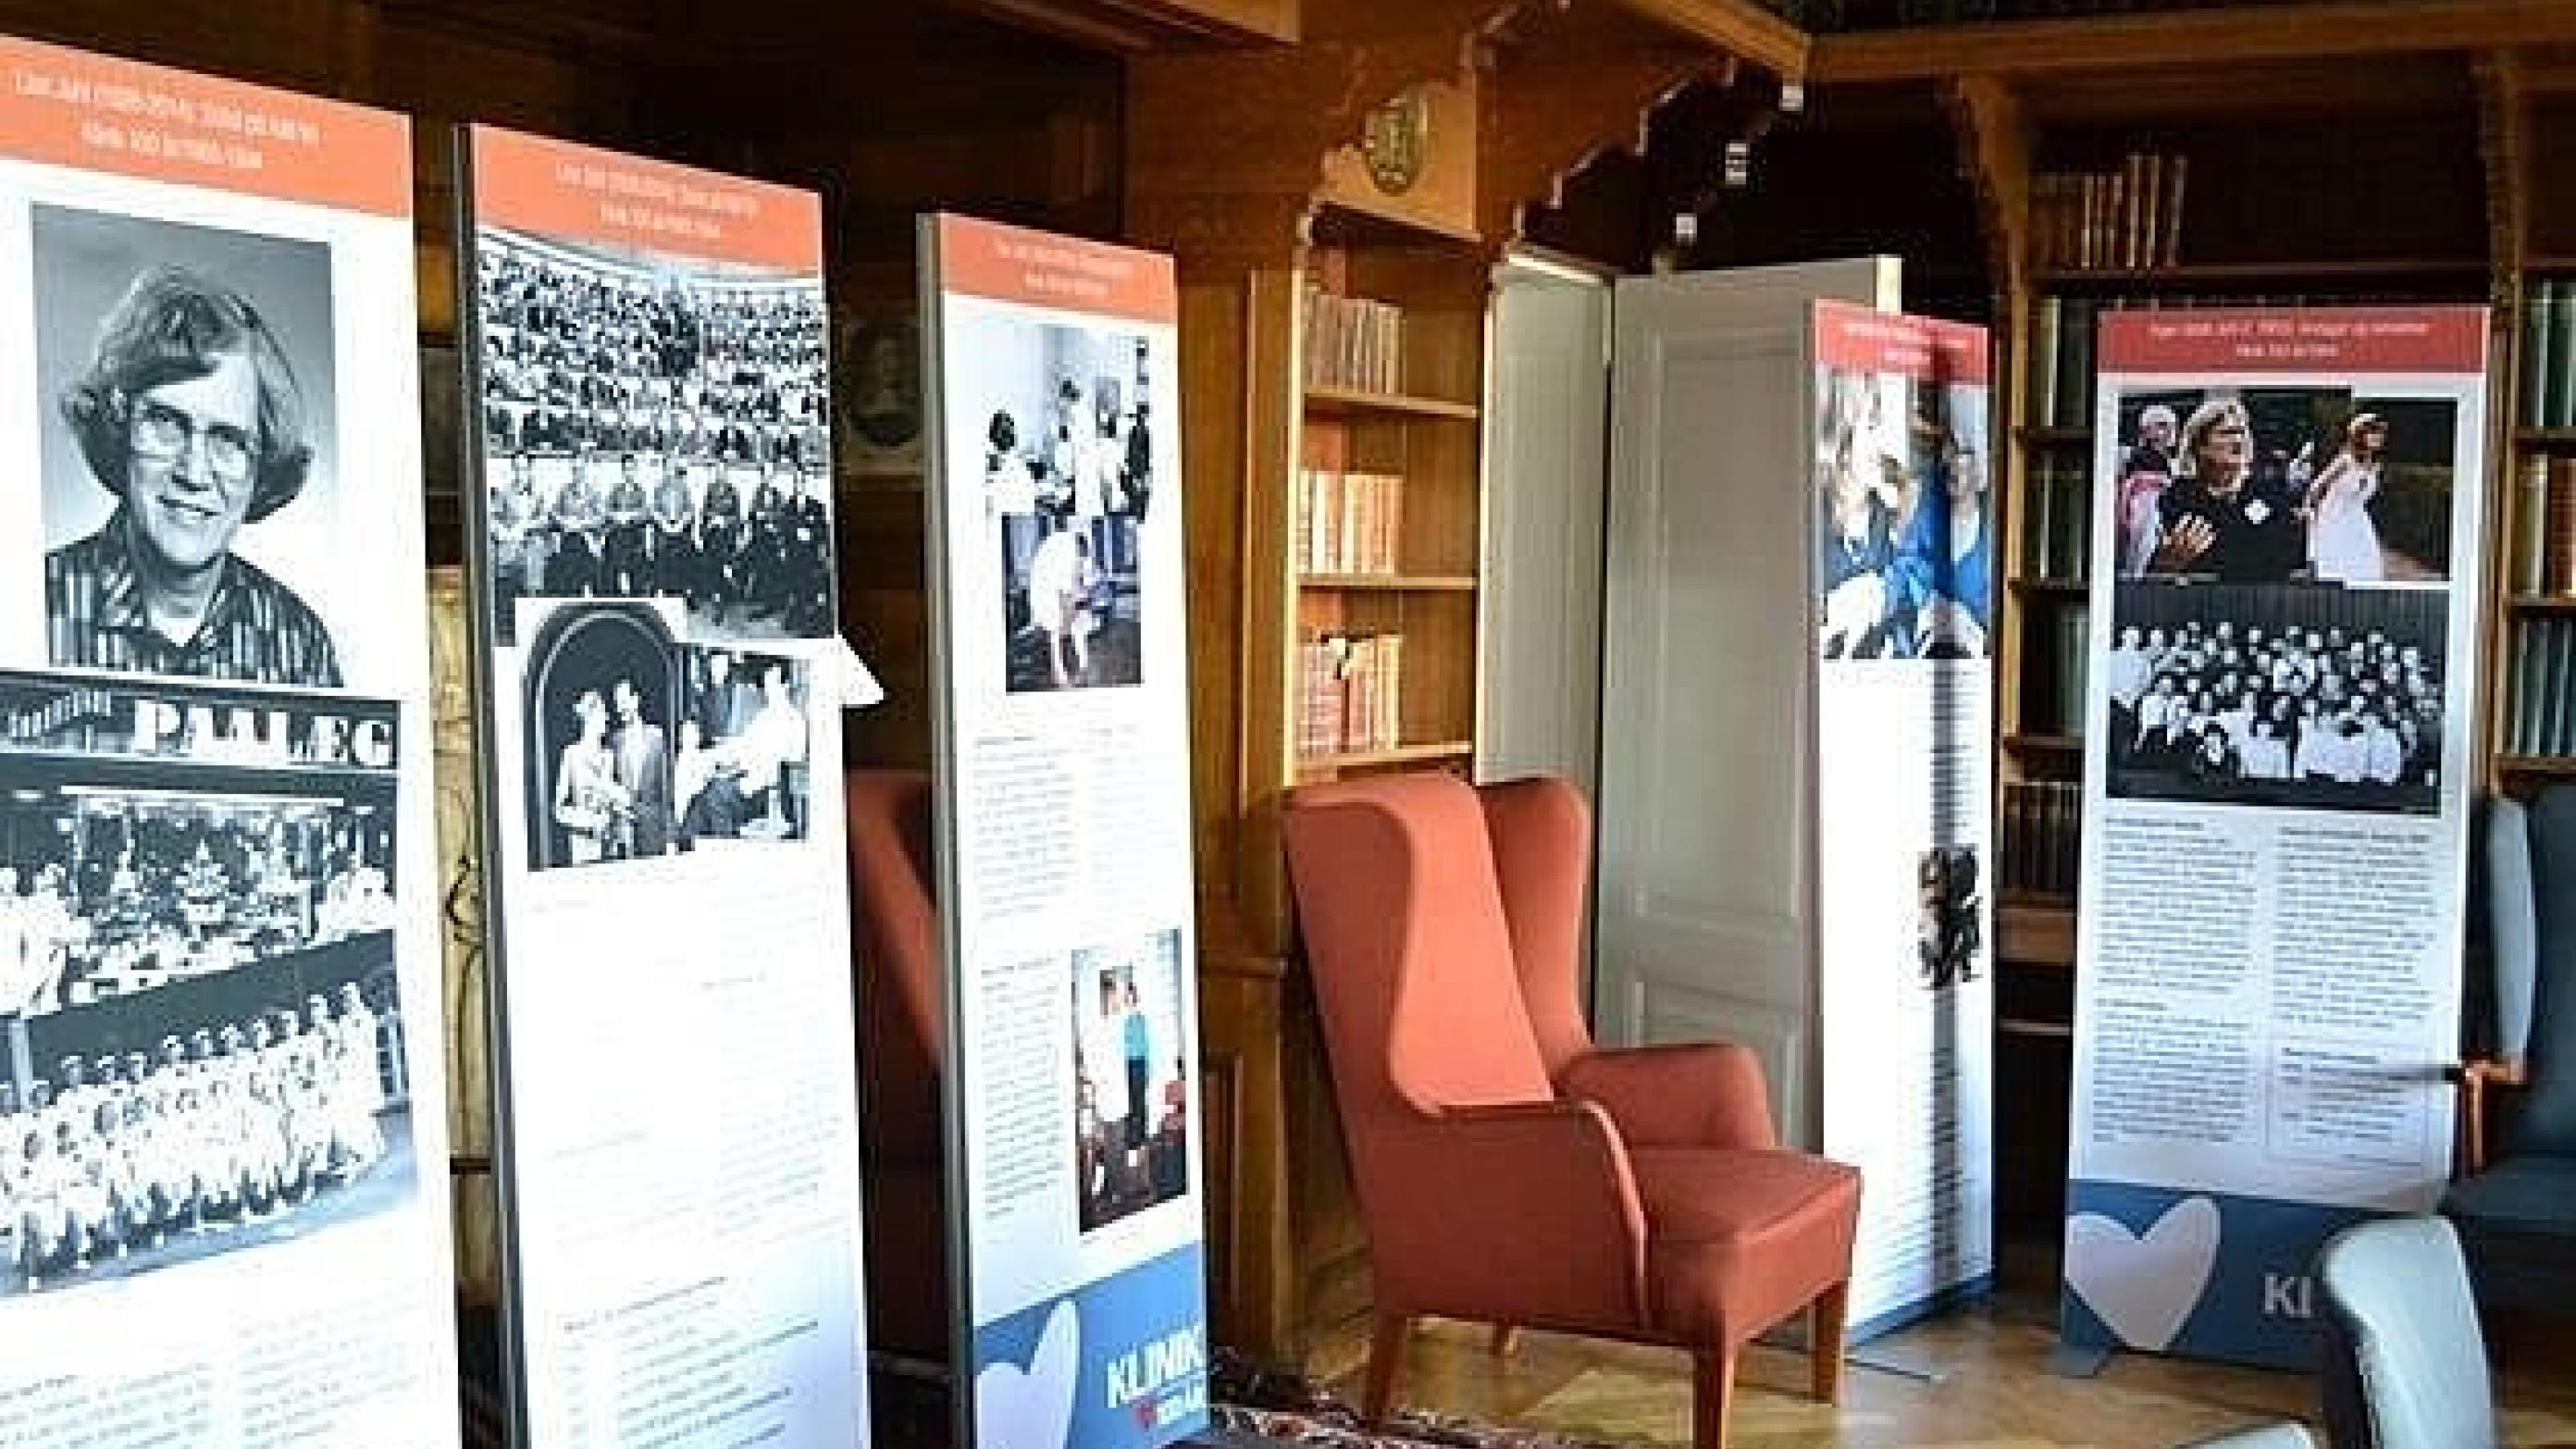 Domus Medica - her Biblioteket - huser i øjeblikket en udstilling om en lægeklinik, der uden afbræk har haft kvinder i staben i 100 år. 